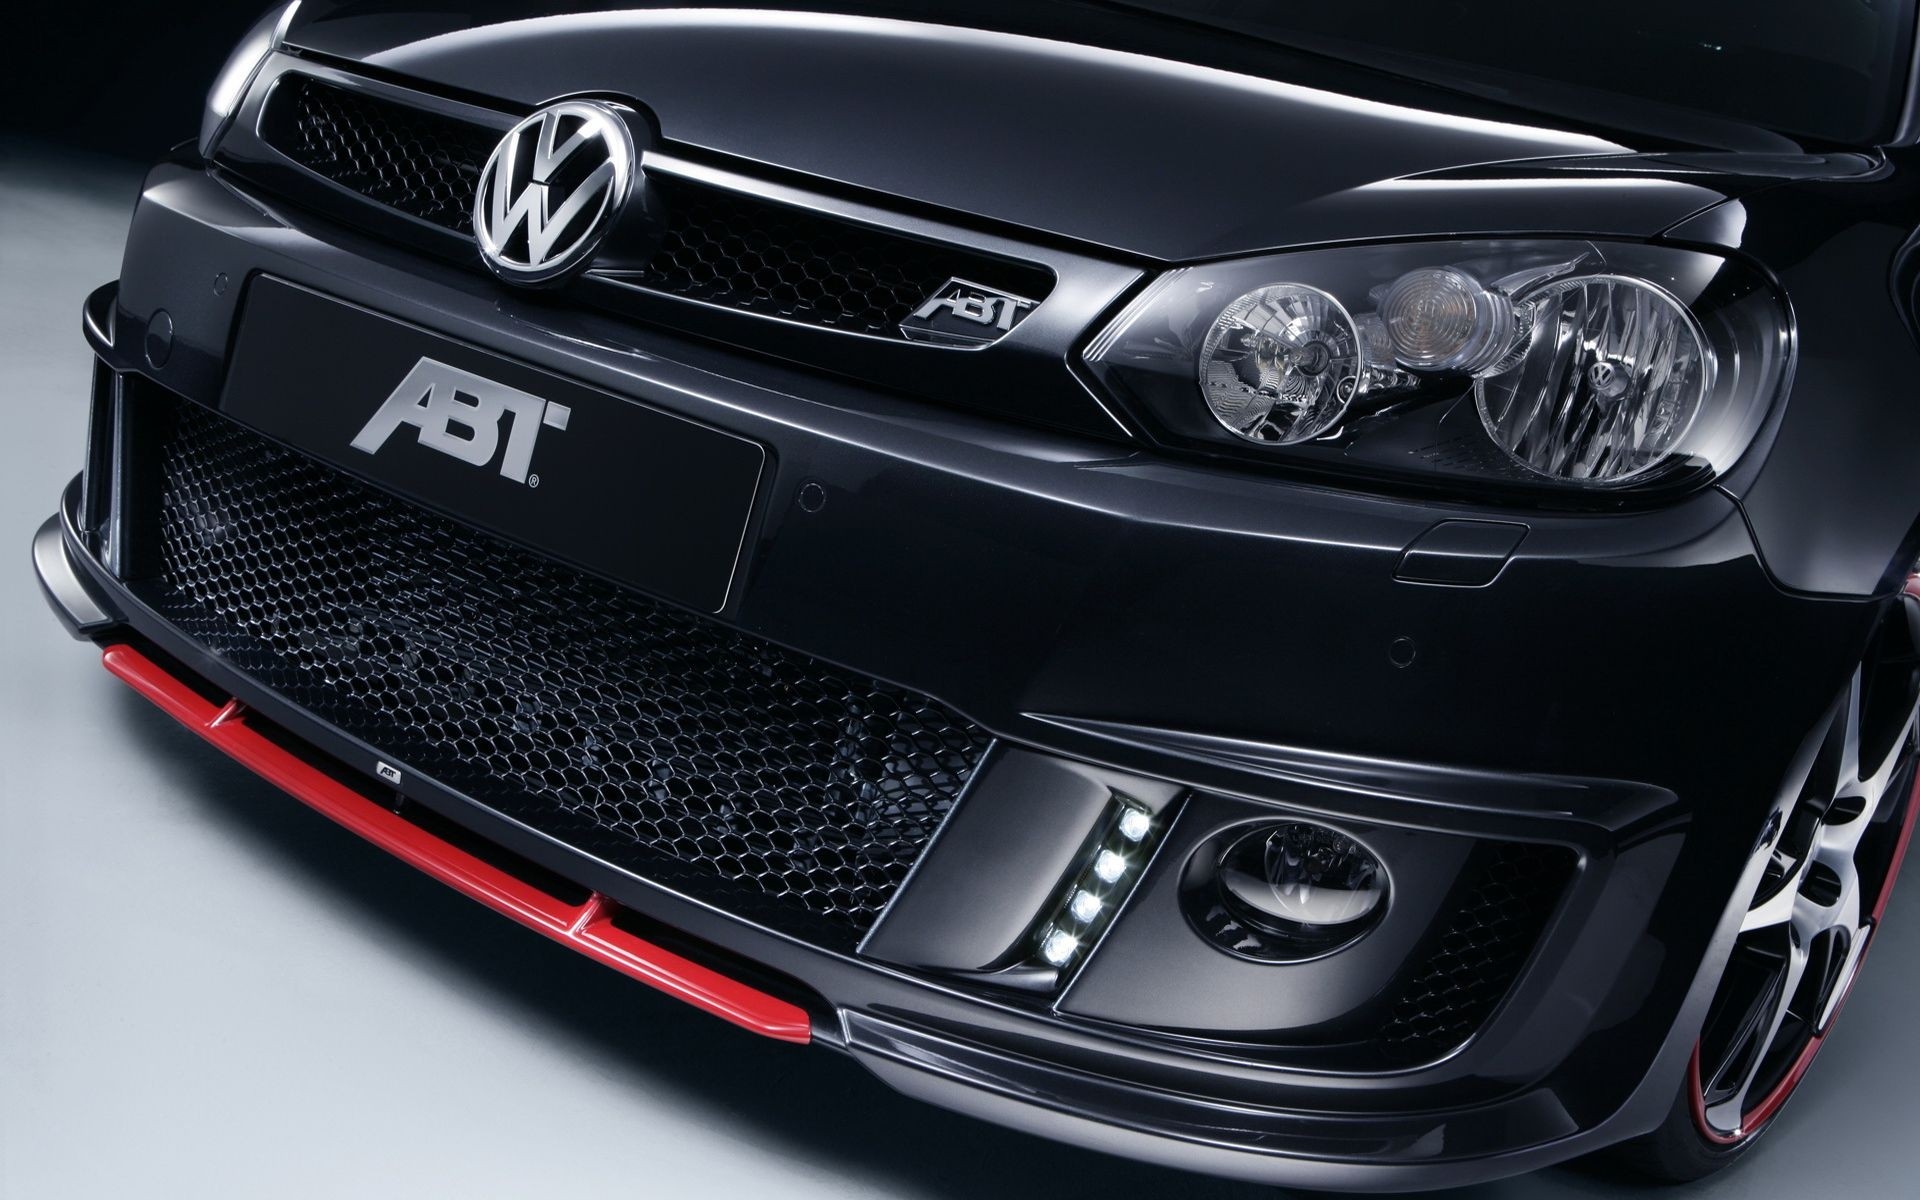 cars, Volkswagen - desktop wallpaper